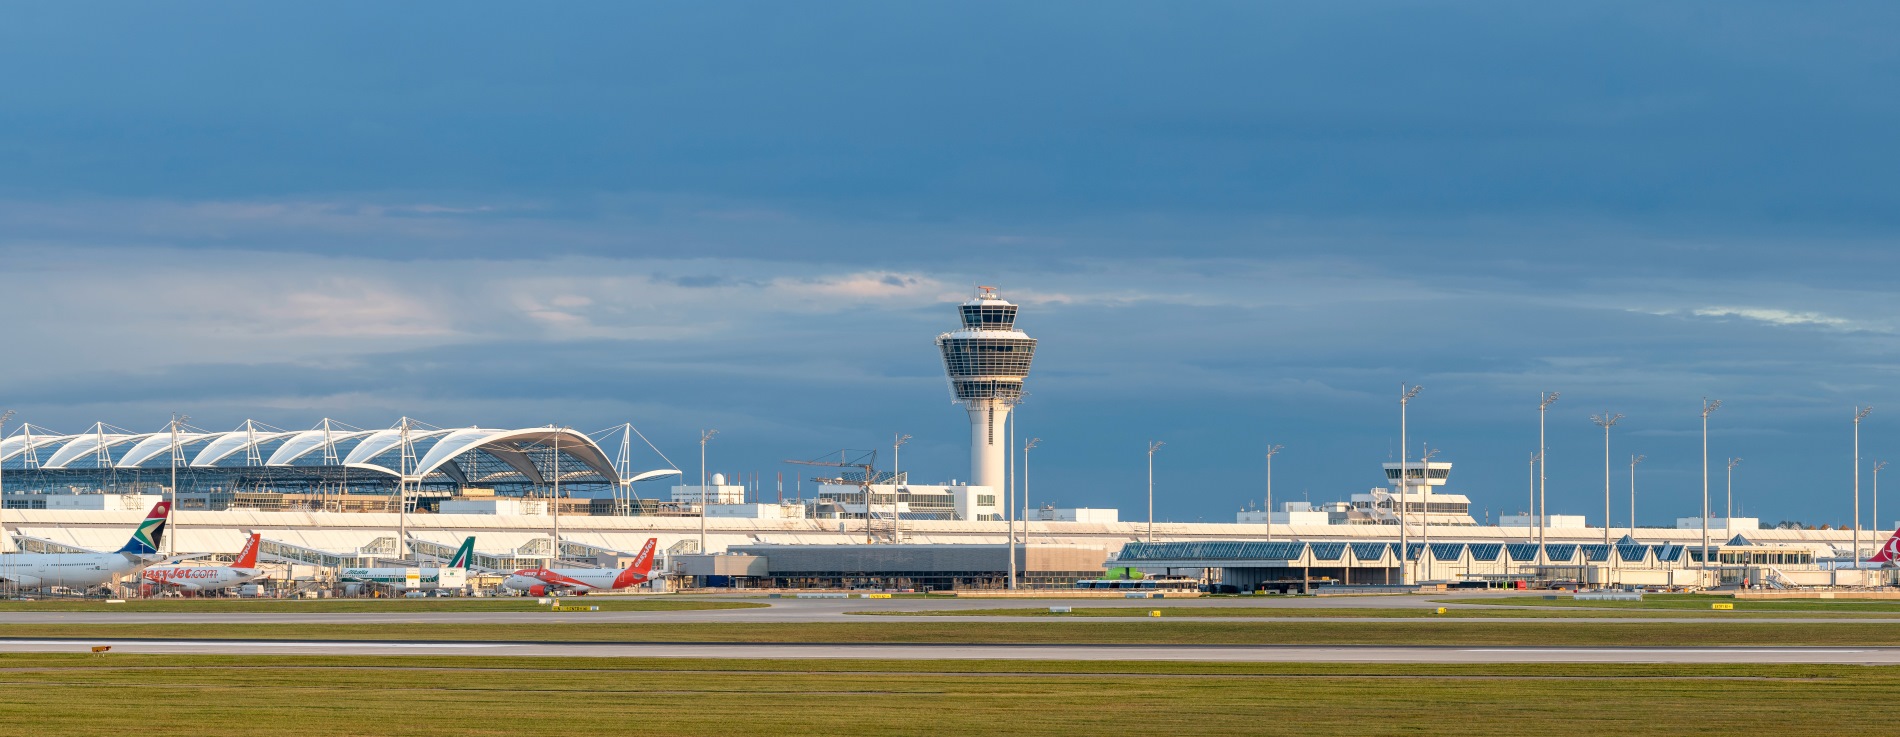 das Bild zeigt den Flughafen München, Inklusive Tower und Flugzeugen